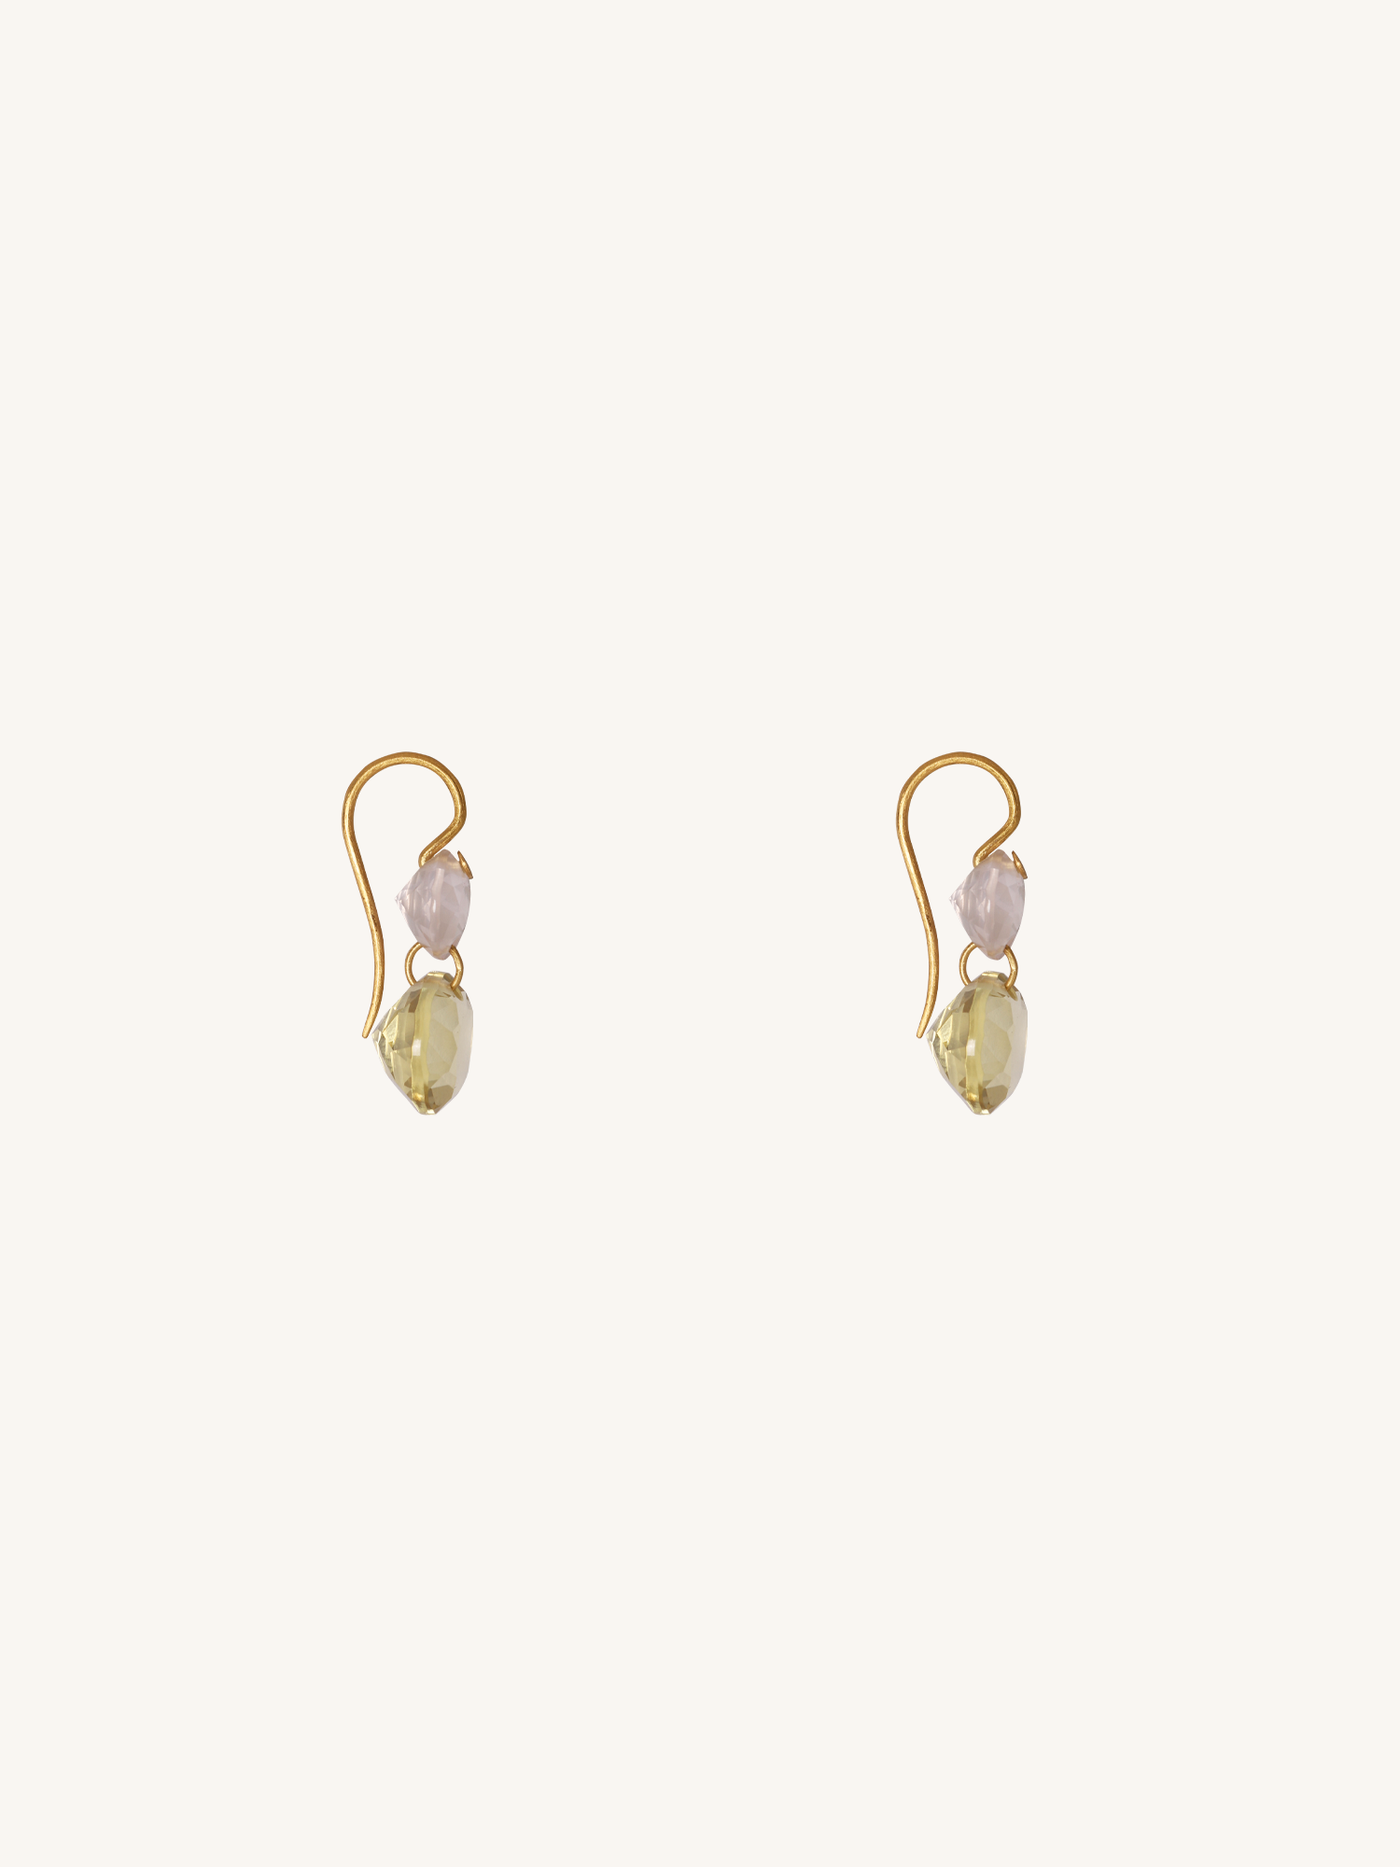 Rose Quartz & Lemon Quartz Small Earrings